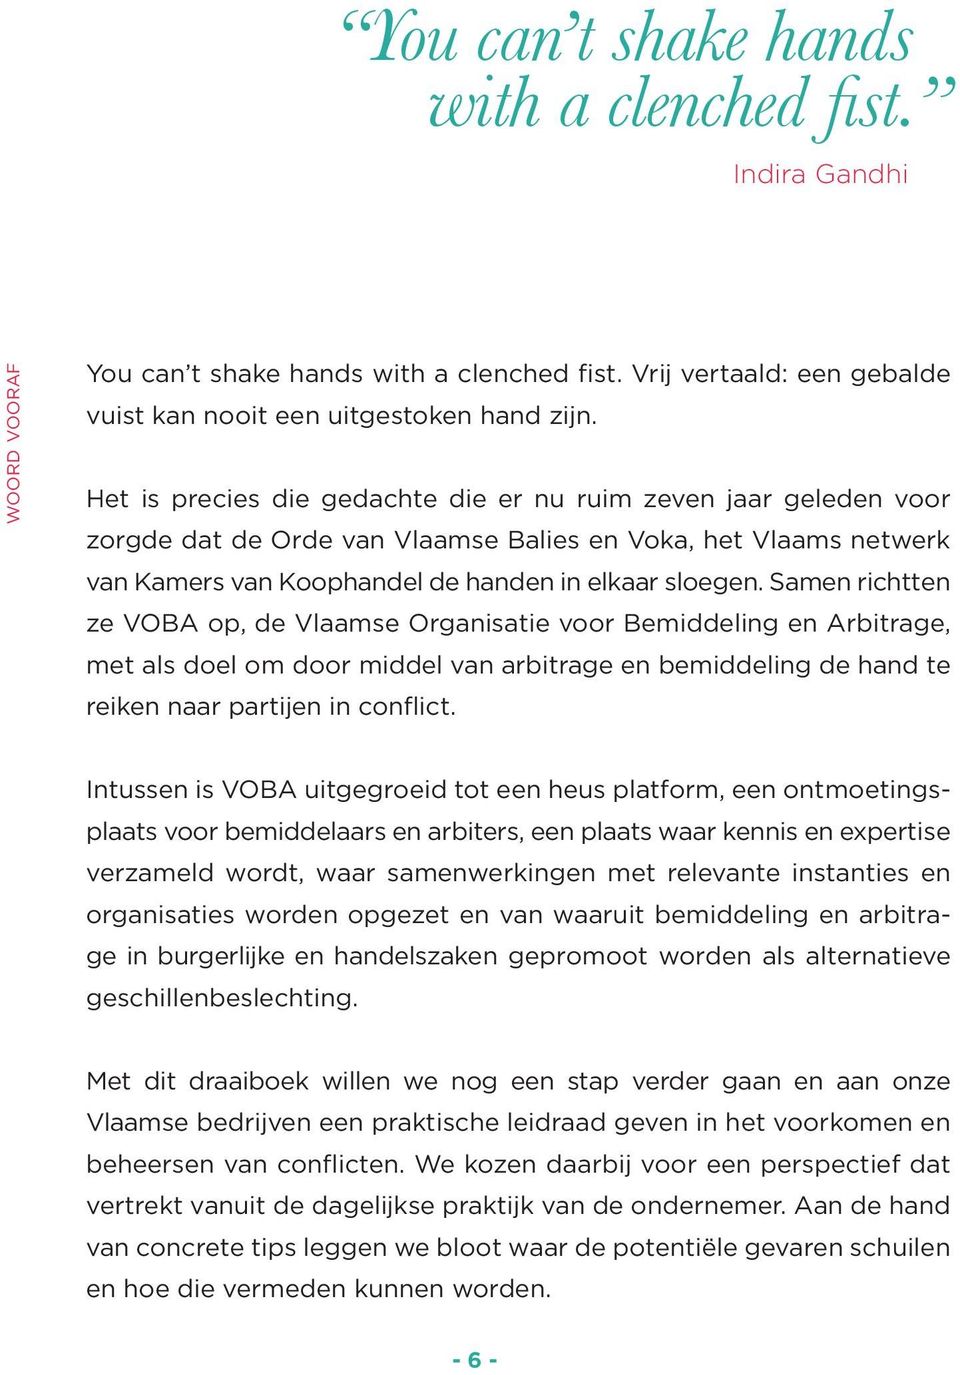 Samen richtten ze VOBA op, de Vlaamse Organisatie voor Bemiddeling en Arbitrage, met als doel om door middel van arbitrage en bemiddeling de hand te reiken naar partijen in conflict.